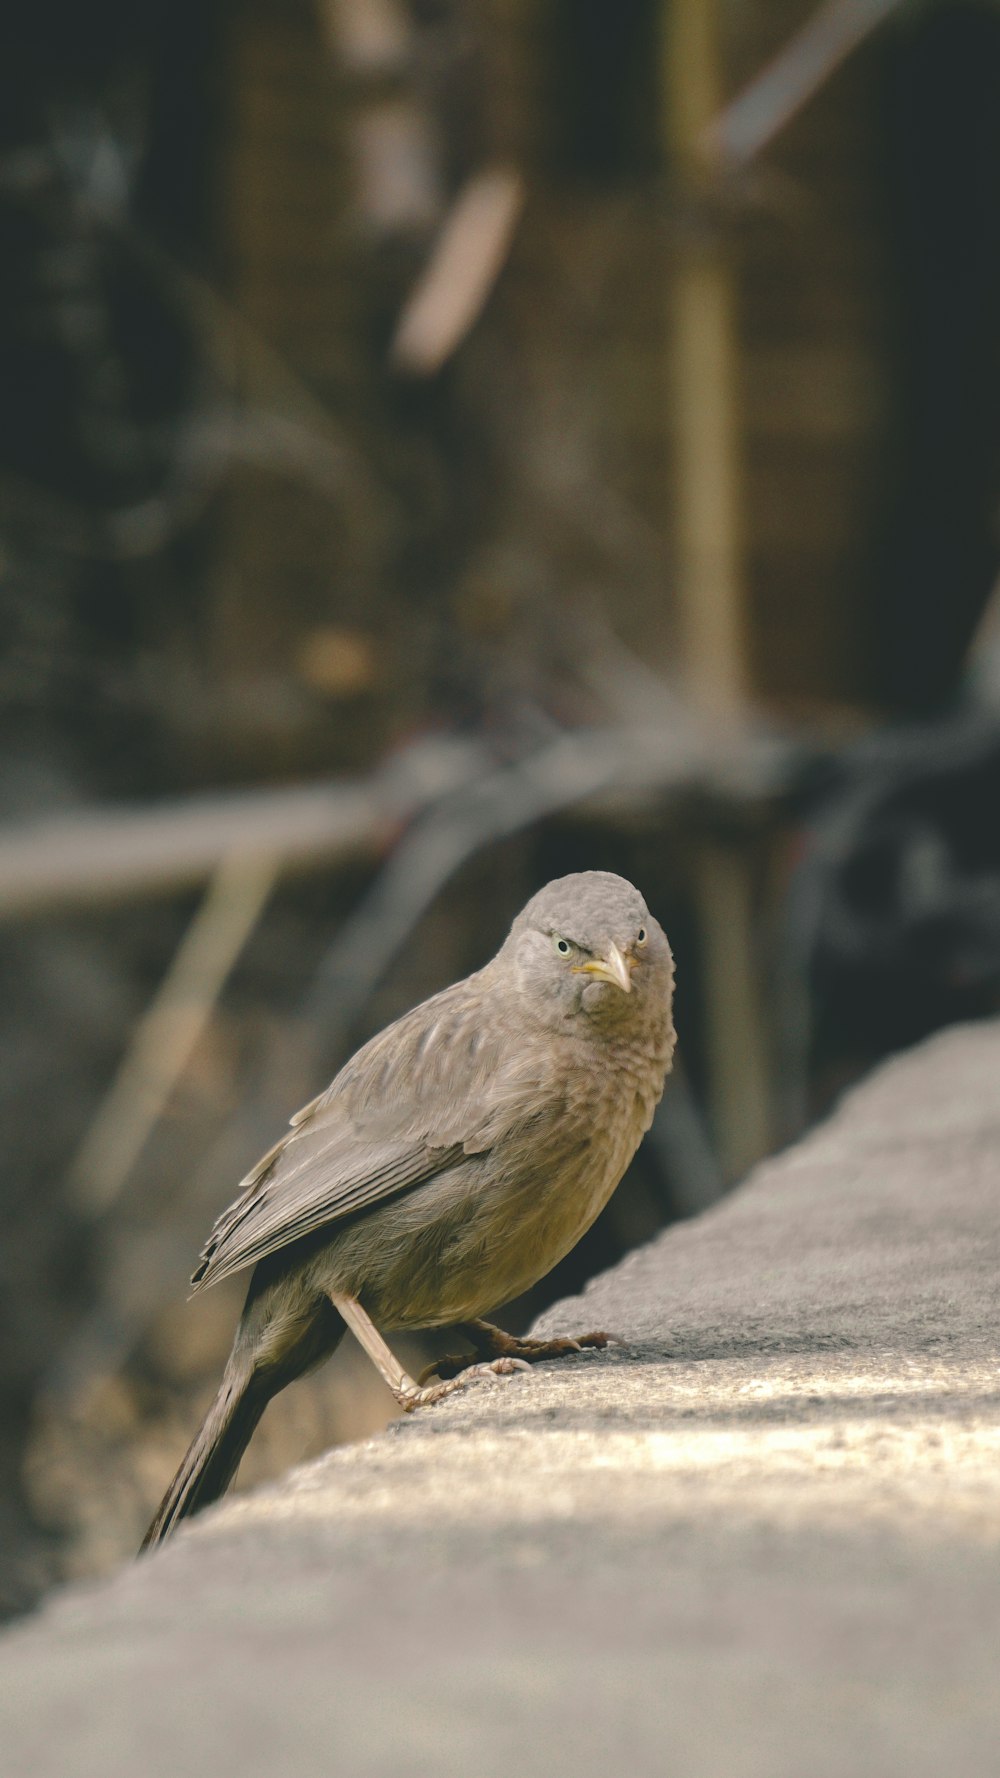 Ein kleiner Vogel sitzt am Rand eines Gebäudes